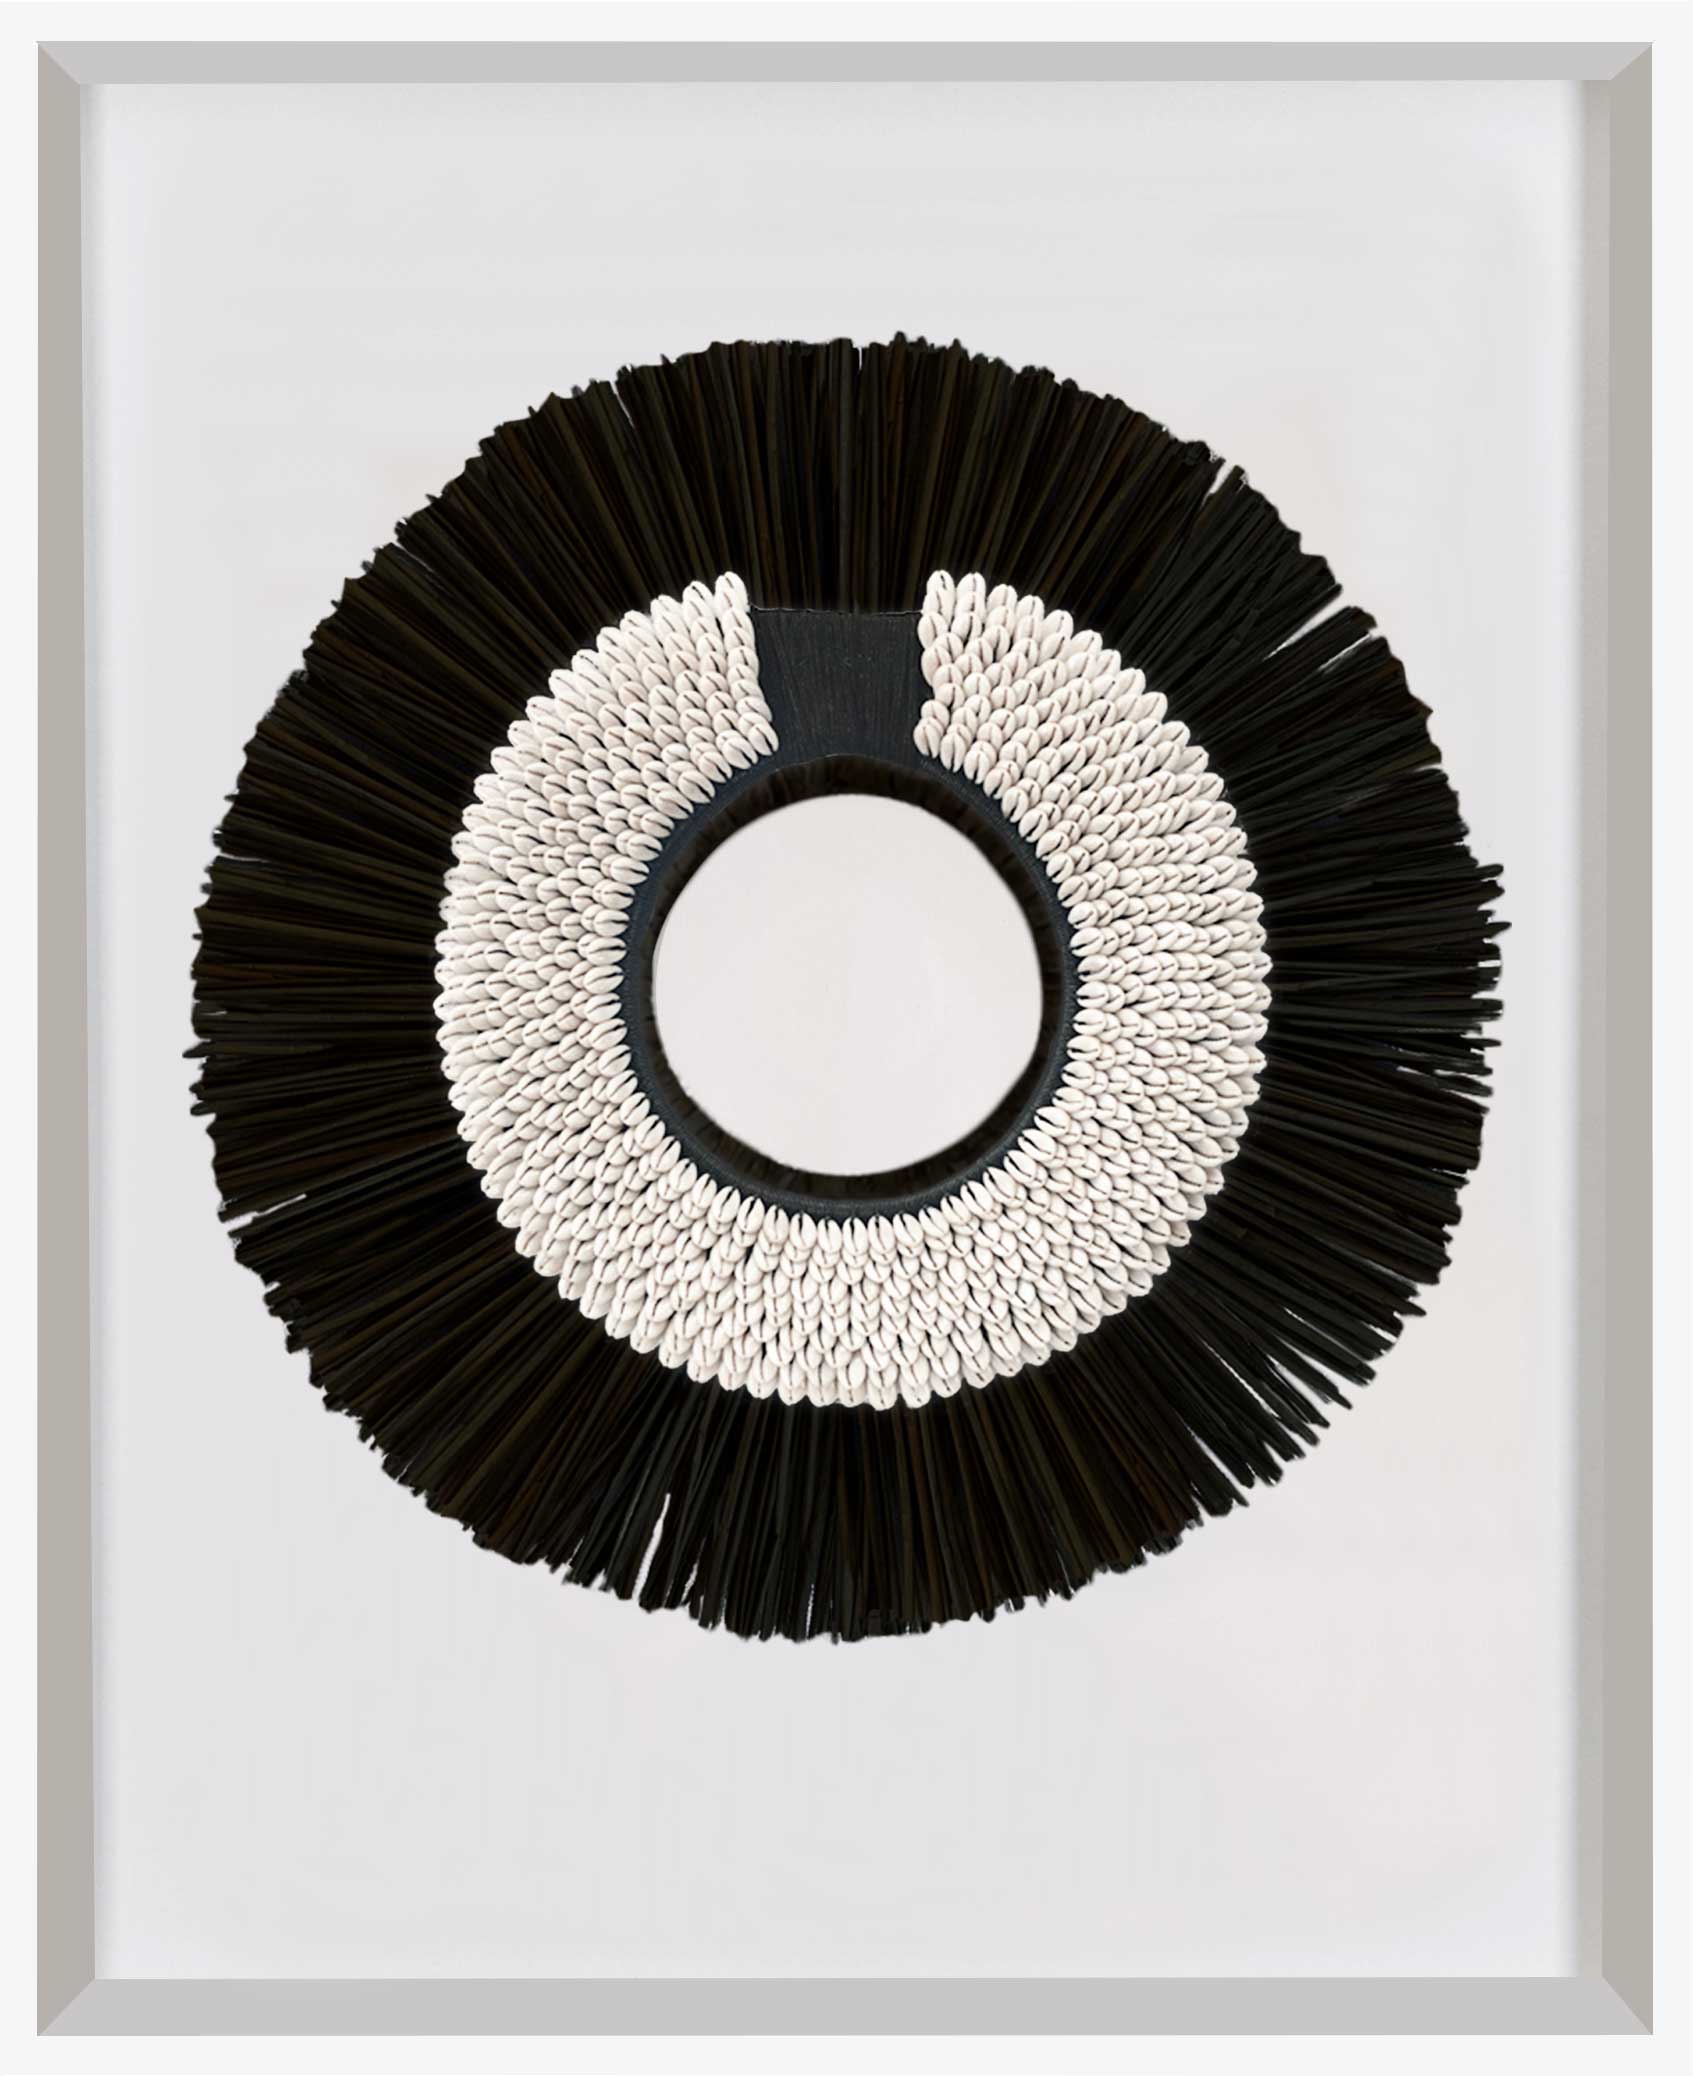 Bandhini Homewear Design Artwork White Frame / 67 x 85 cm African Shell Ring Black & Grass Mat Black on White Artwork 67 x 85 cm